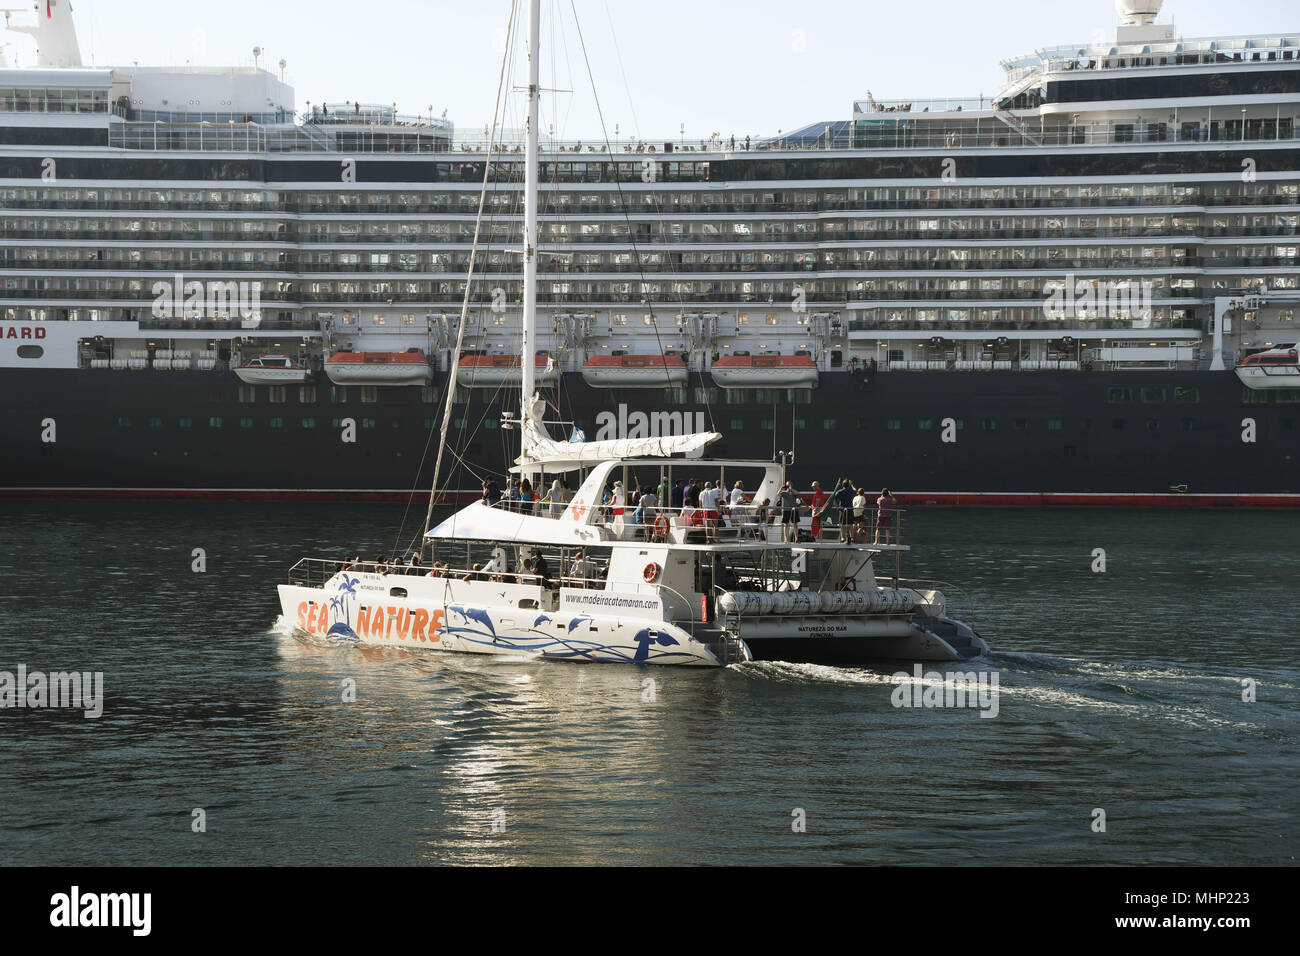 Un catamaran de quitter le port de Funchal, Madère avec les touristes sur une croisière. Le bateau de croisière Queen Elizabeth est dans l'arrière-plan Banque D'Images